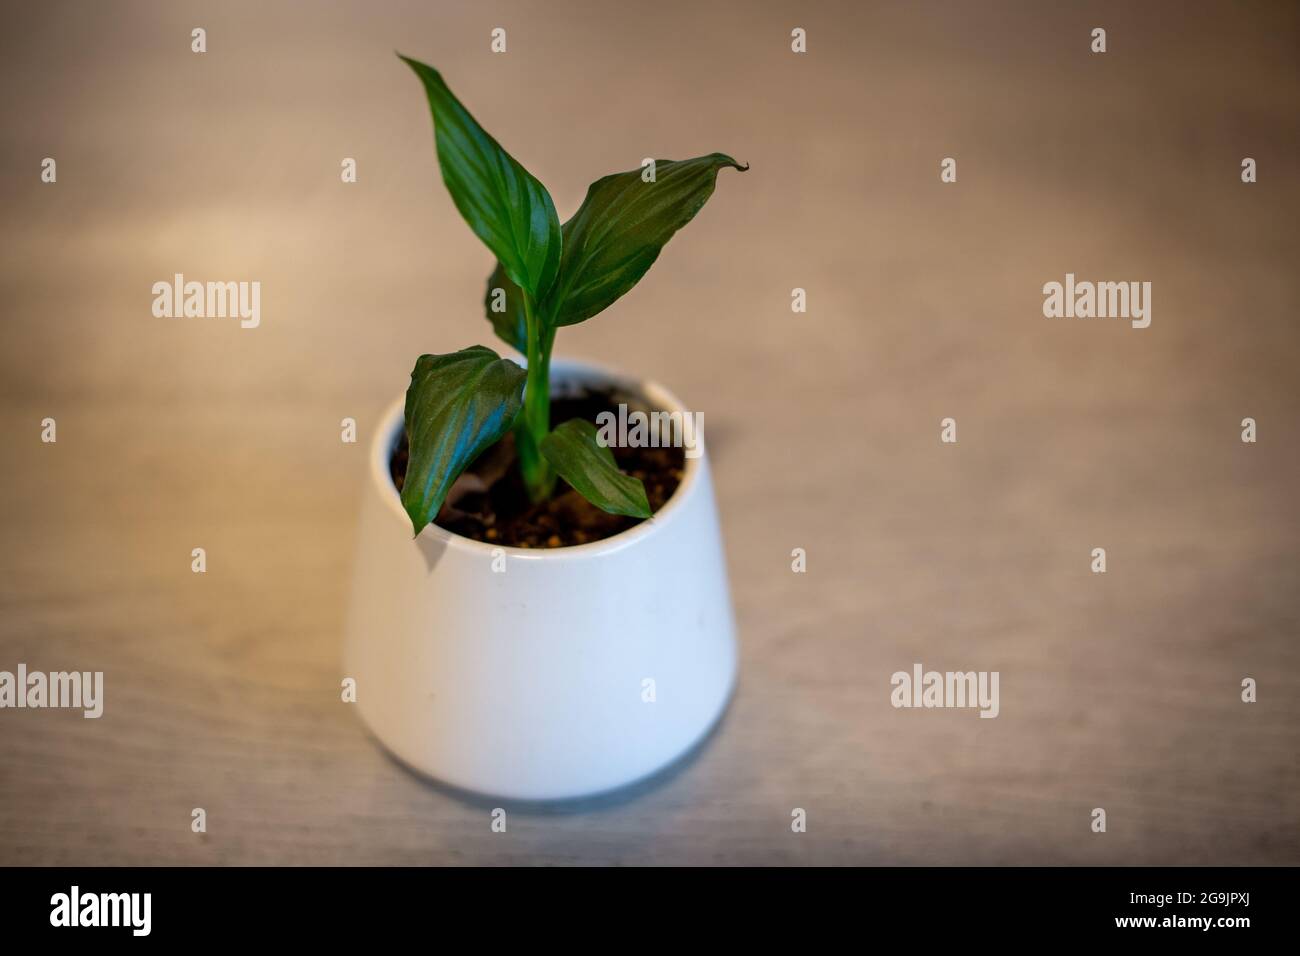 Un bambino spathipyllum, o giglio di pace, che cresce in un vaso bianco e sarà una pianta ideale casa con fiori bianchi Foto Stock